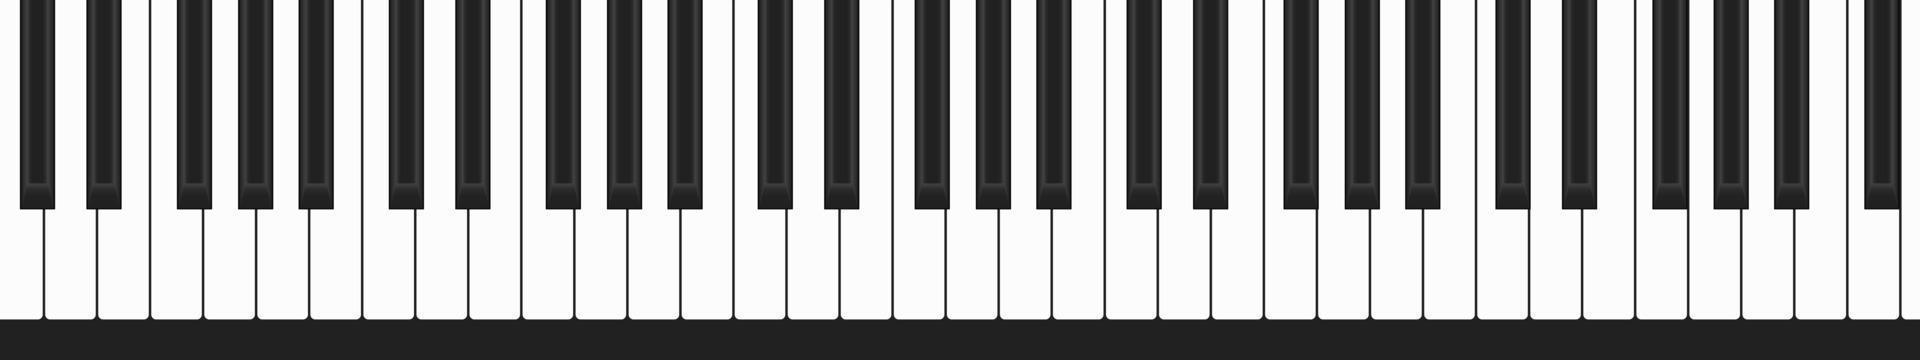 pianoklaviatur, rad med svarta och vita tangenter, klassiska storslagna toner, vektormusikillustration vektor